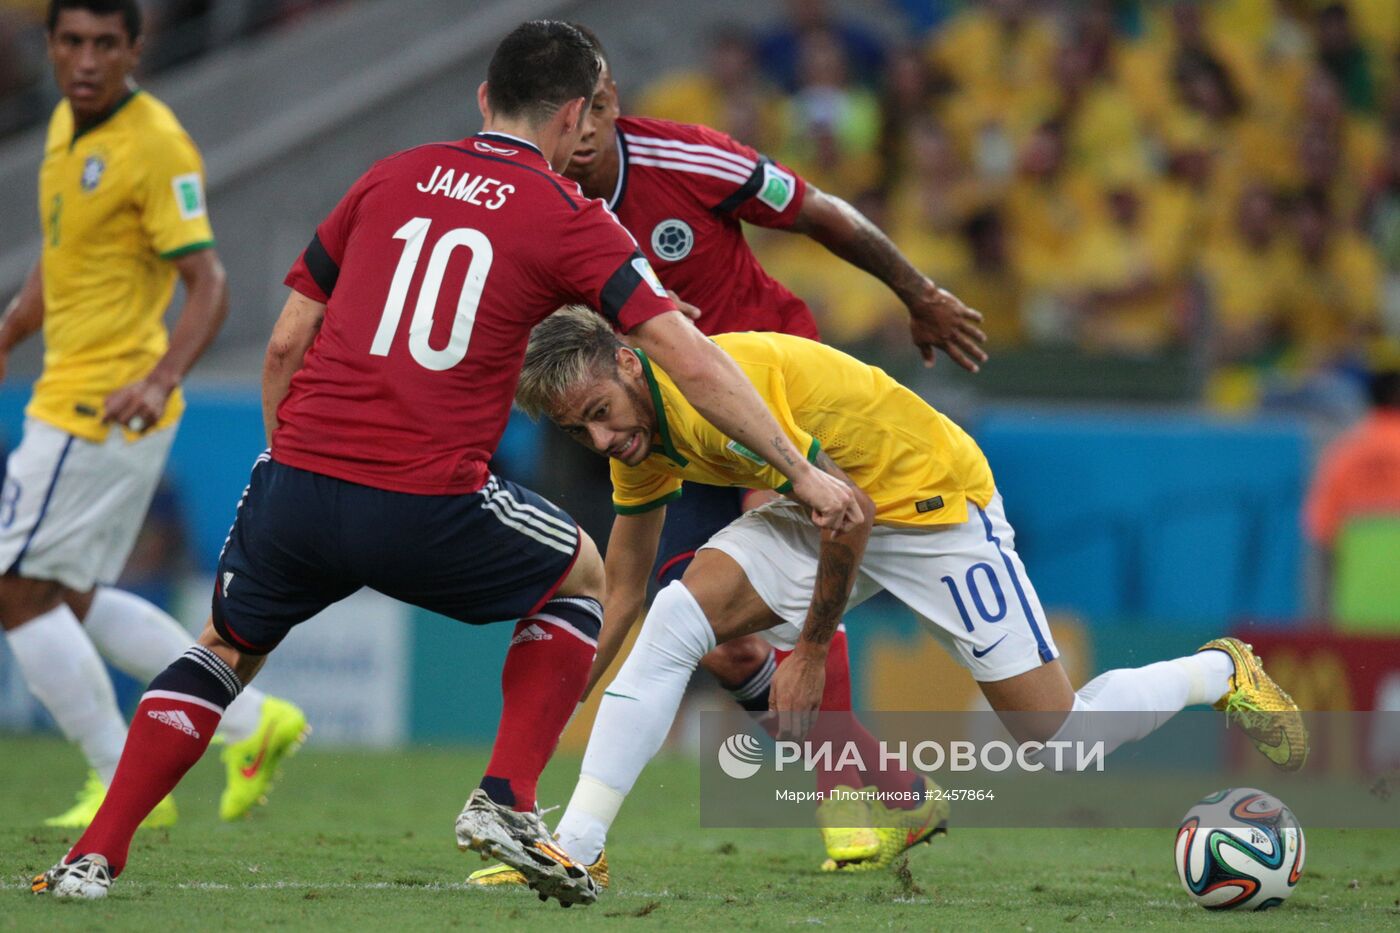 Футбол. Чемпионат мира - 2014. Матч Бразилия - Колумбия